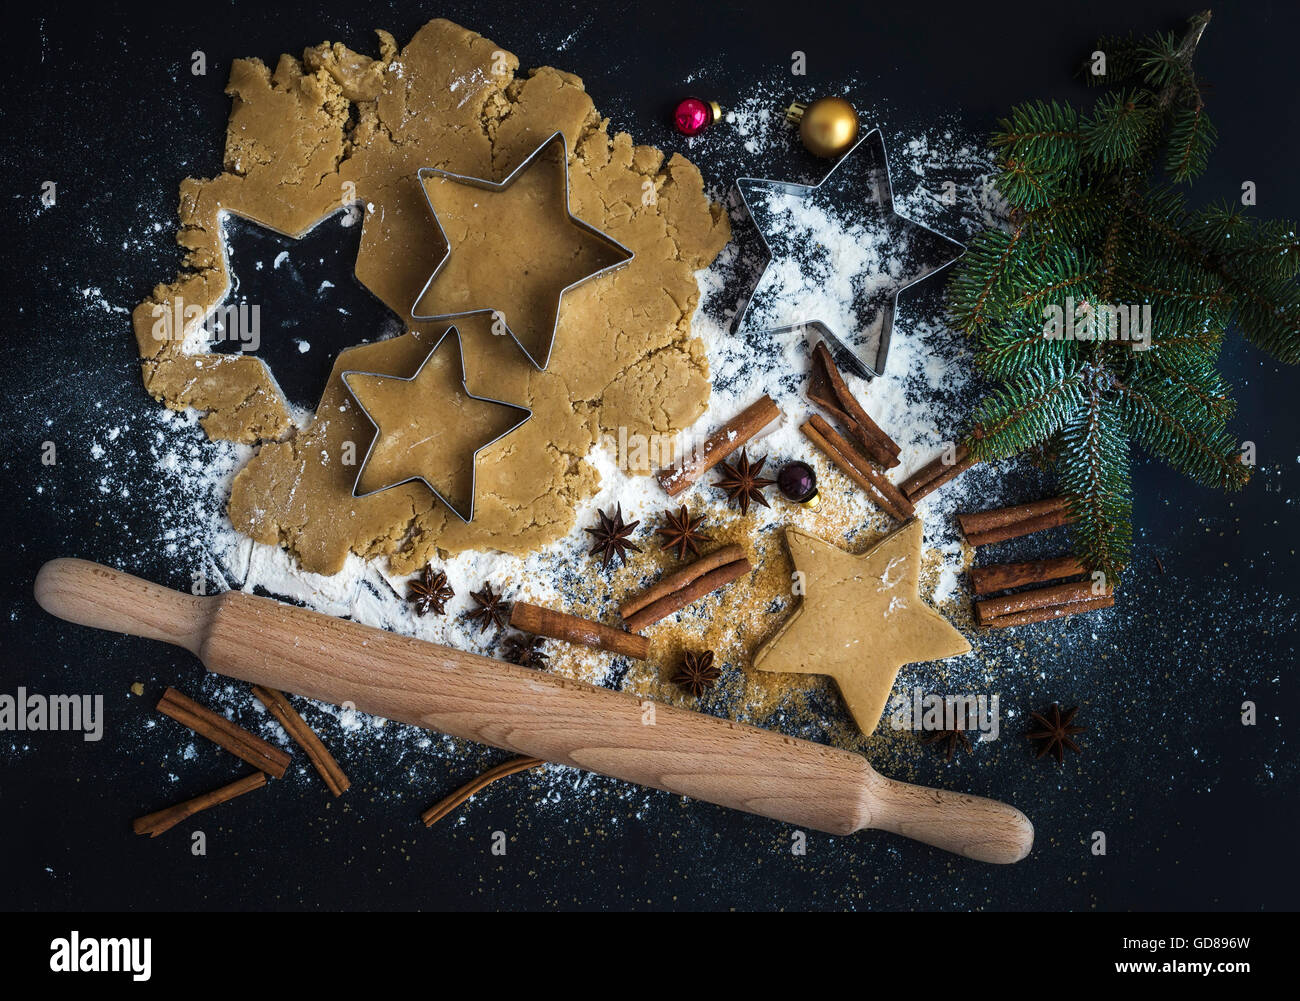 Kochen Weihnachten Urlaub traditionellen Lebkuchen mit Kolben, serviert mit Puderzucker, Zimtstangen und Tanne Zweig Stockfoto